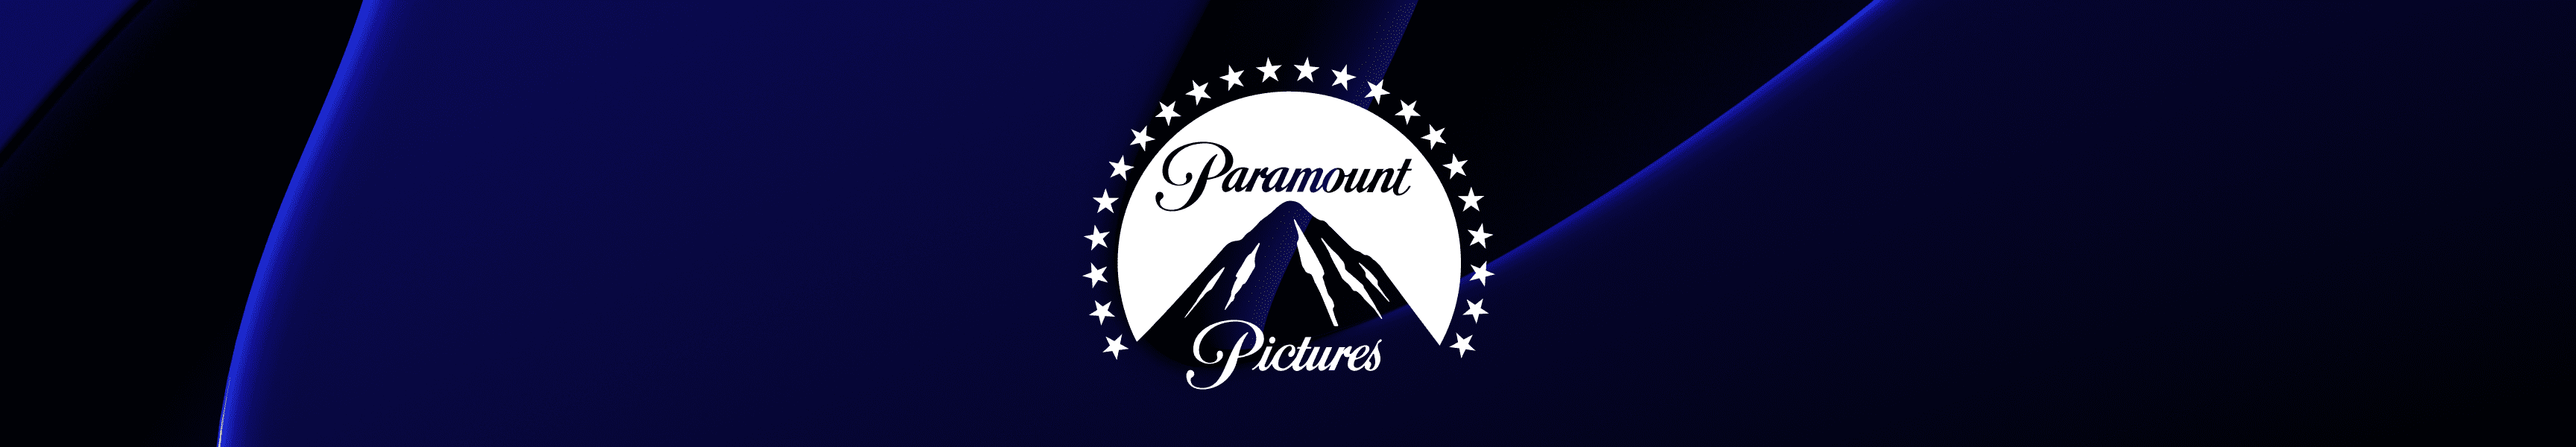 Paramount Pictures Diarios